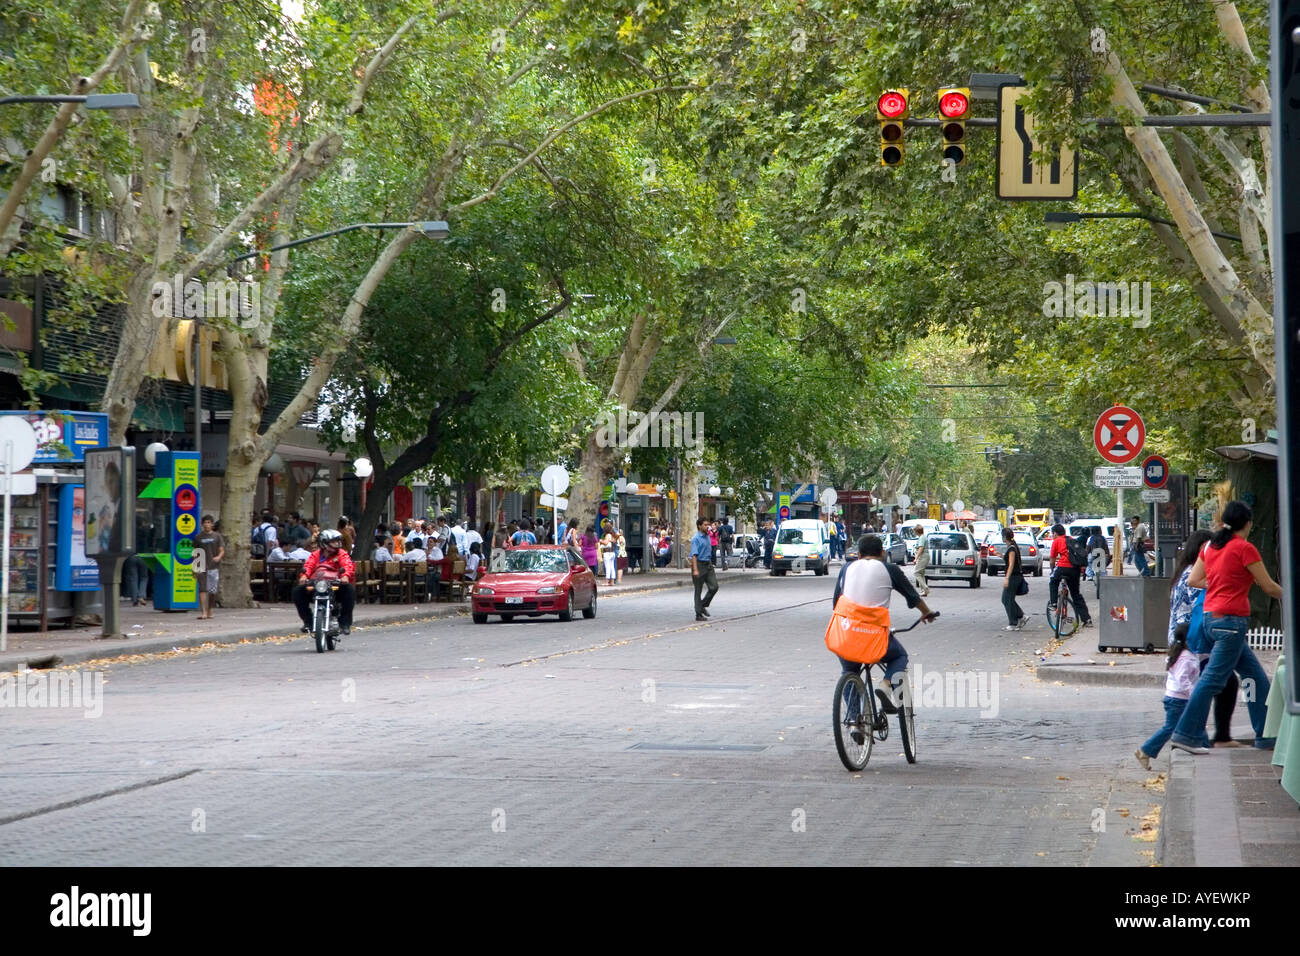 Street scene in Mendoza Argentina Stock Photo